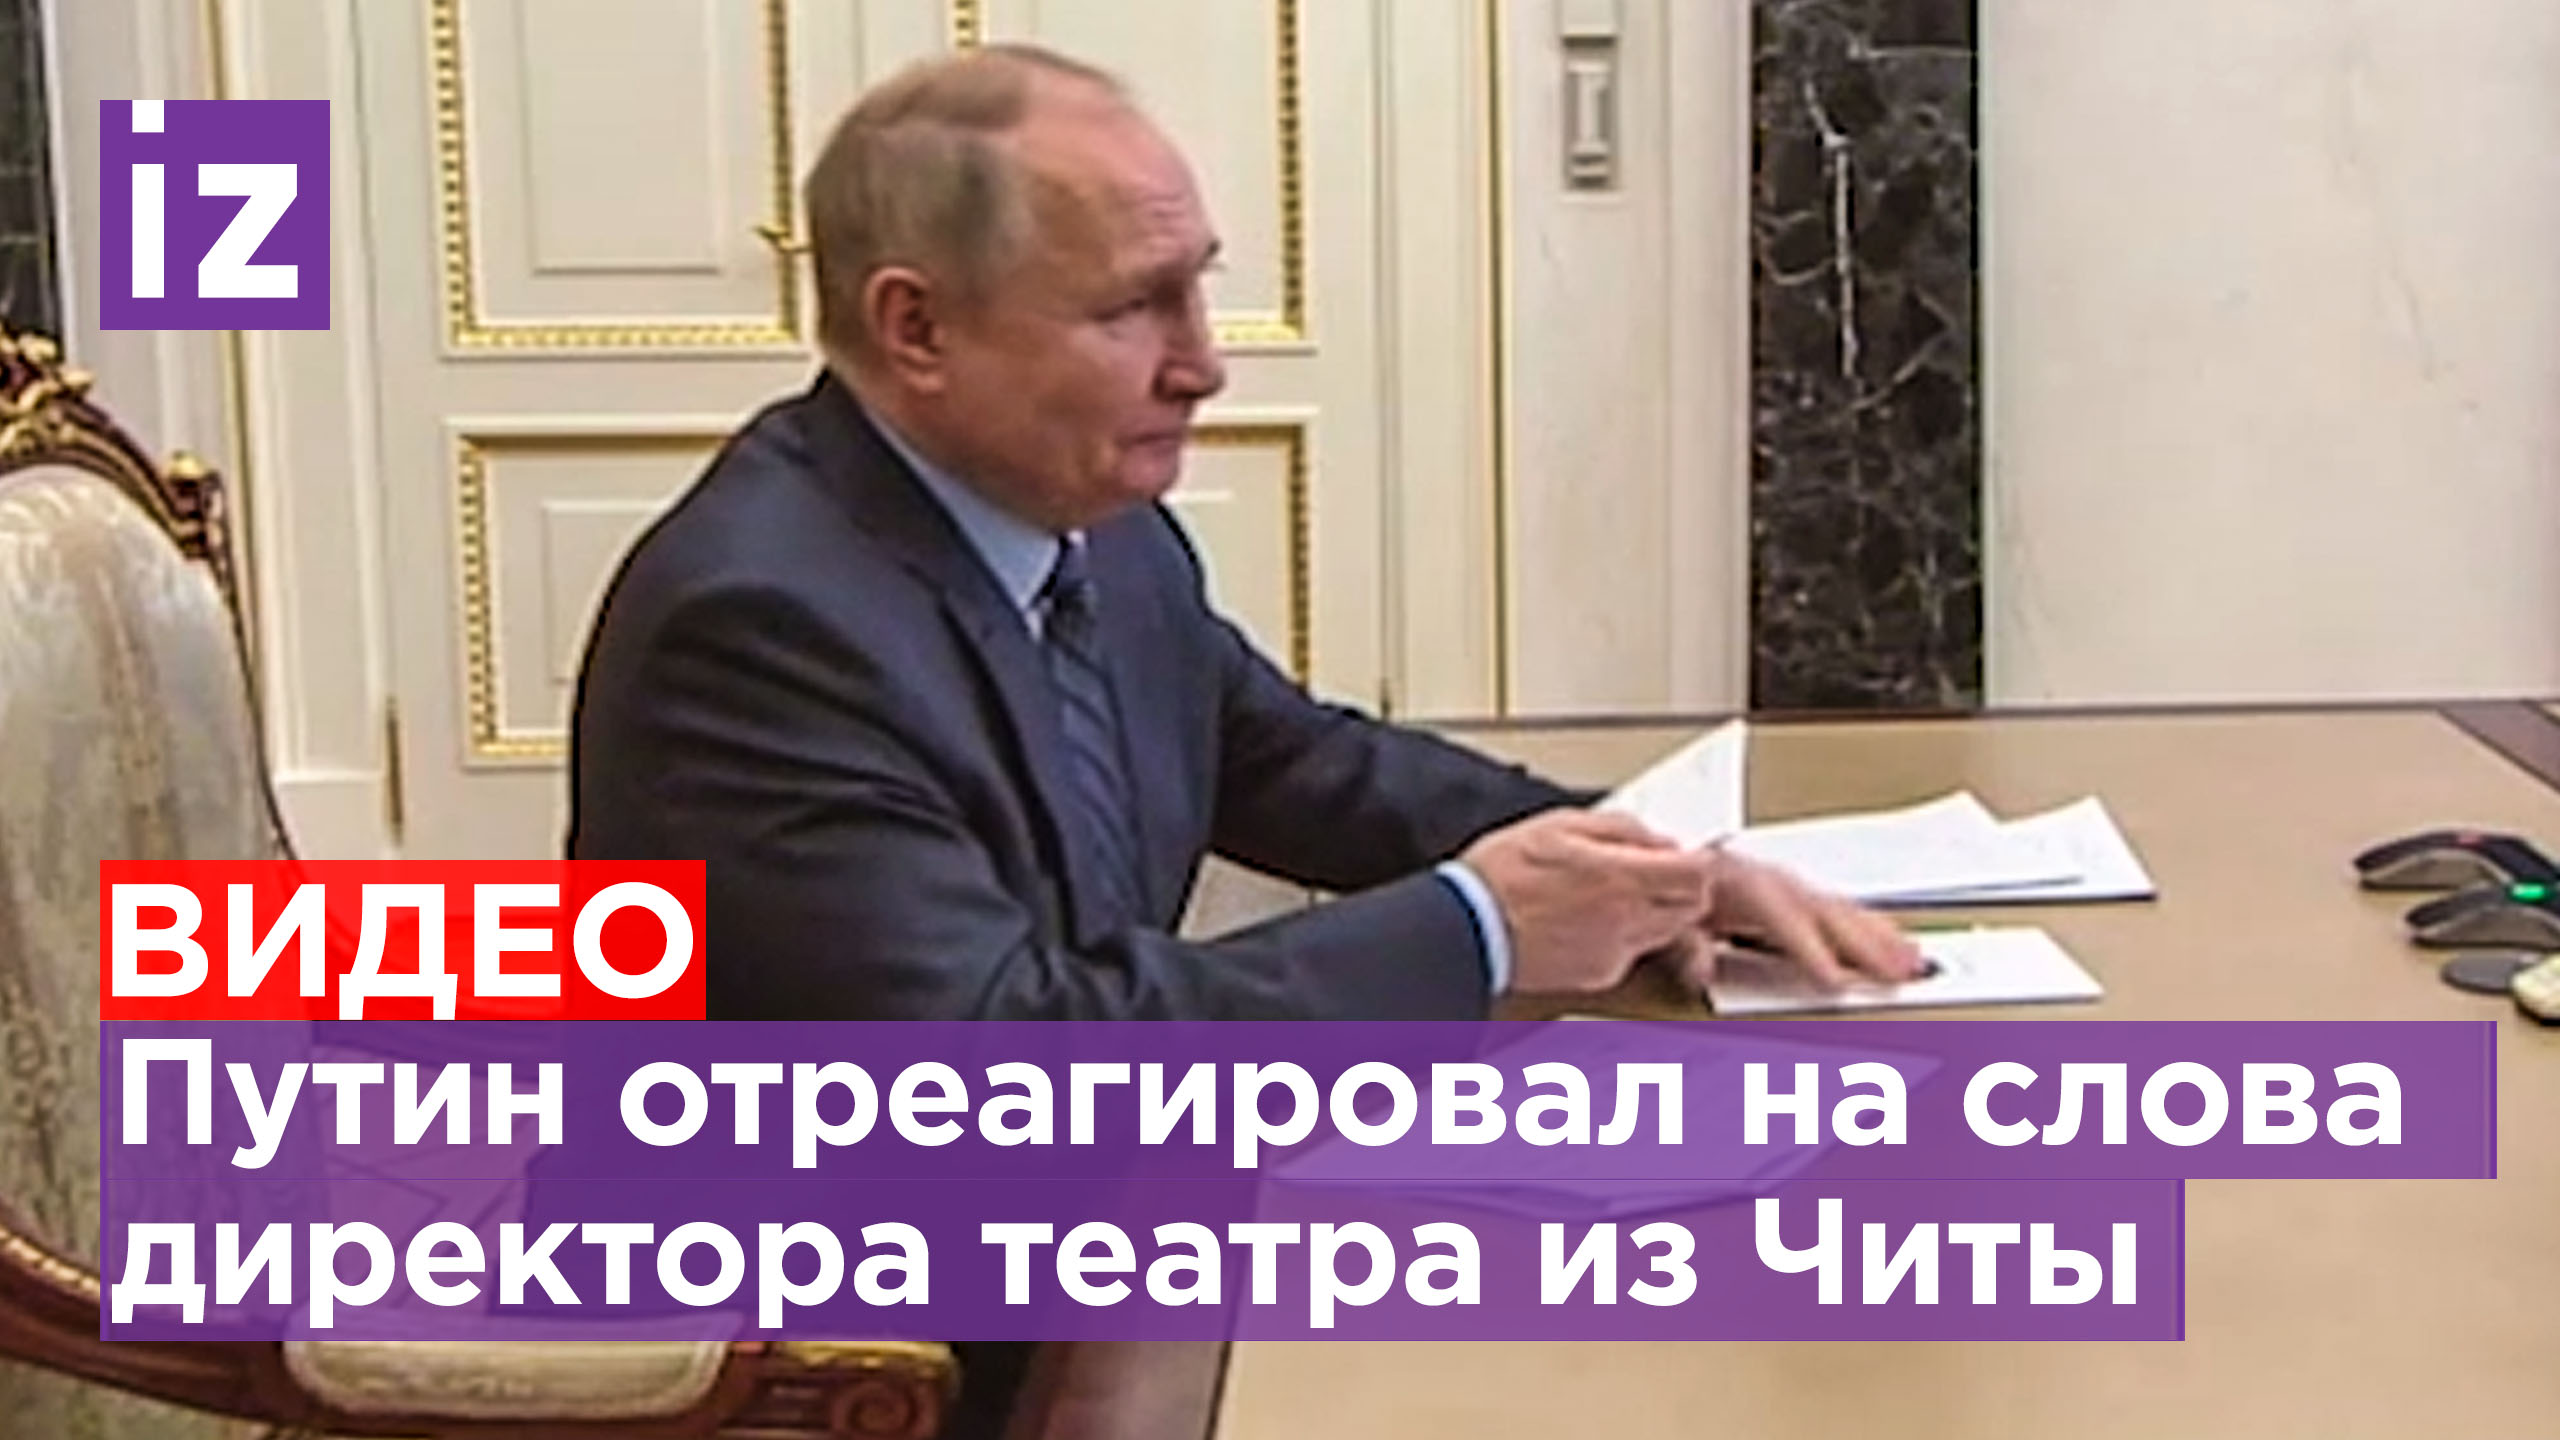 Путин: Мы умные, а те, кто отменяют нашу культуру — не очень умные / Известия